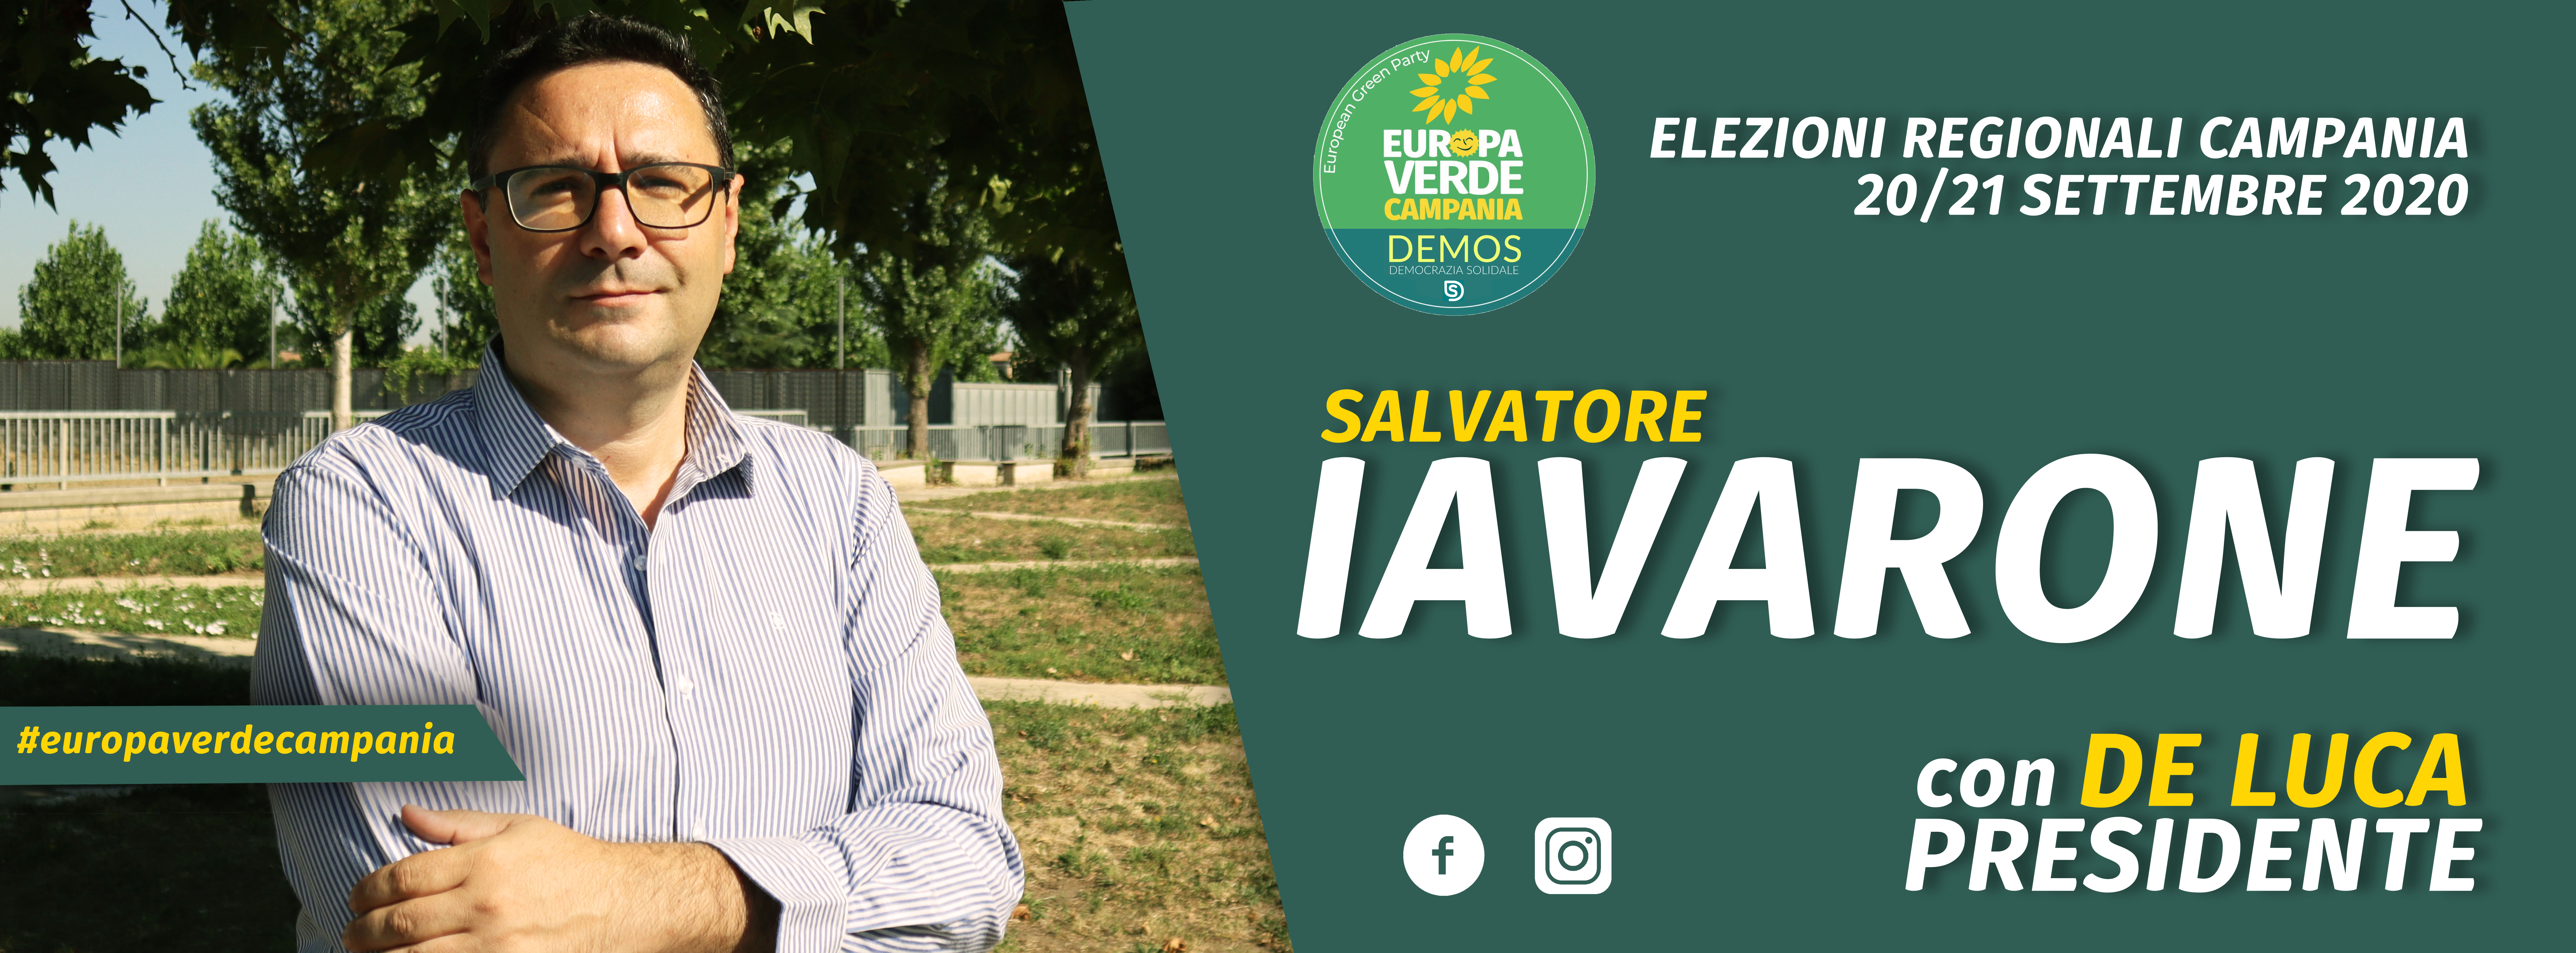 Donare alberi per riscattare il territorio: la proposta di Salvatore Iavarone, candidato al consiglio regionale con Verdi Europa Verde